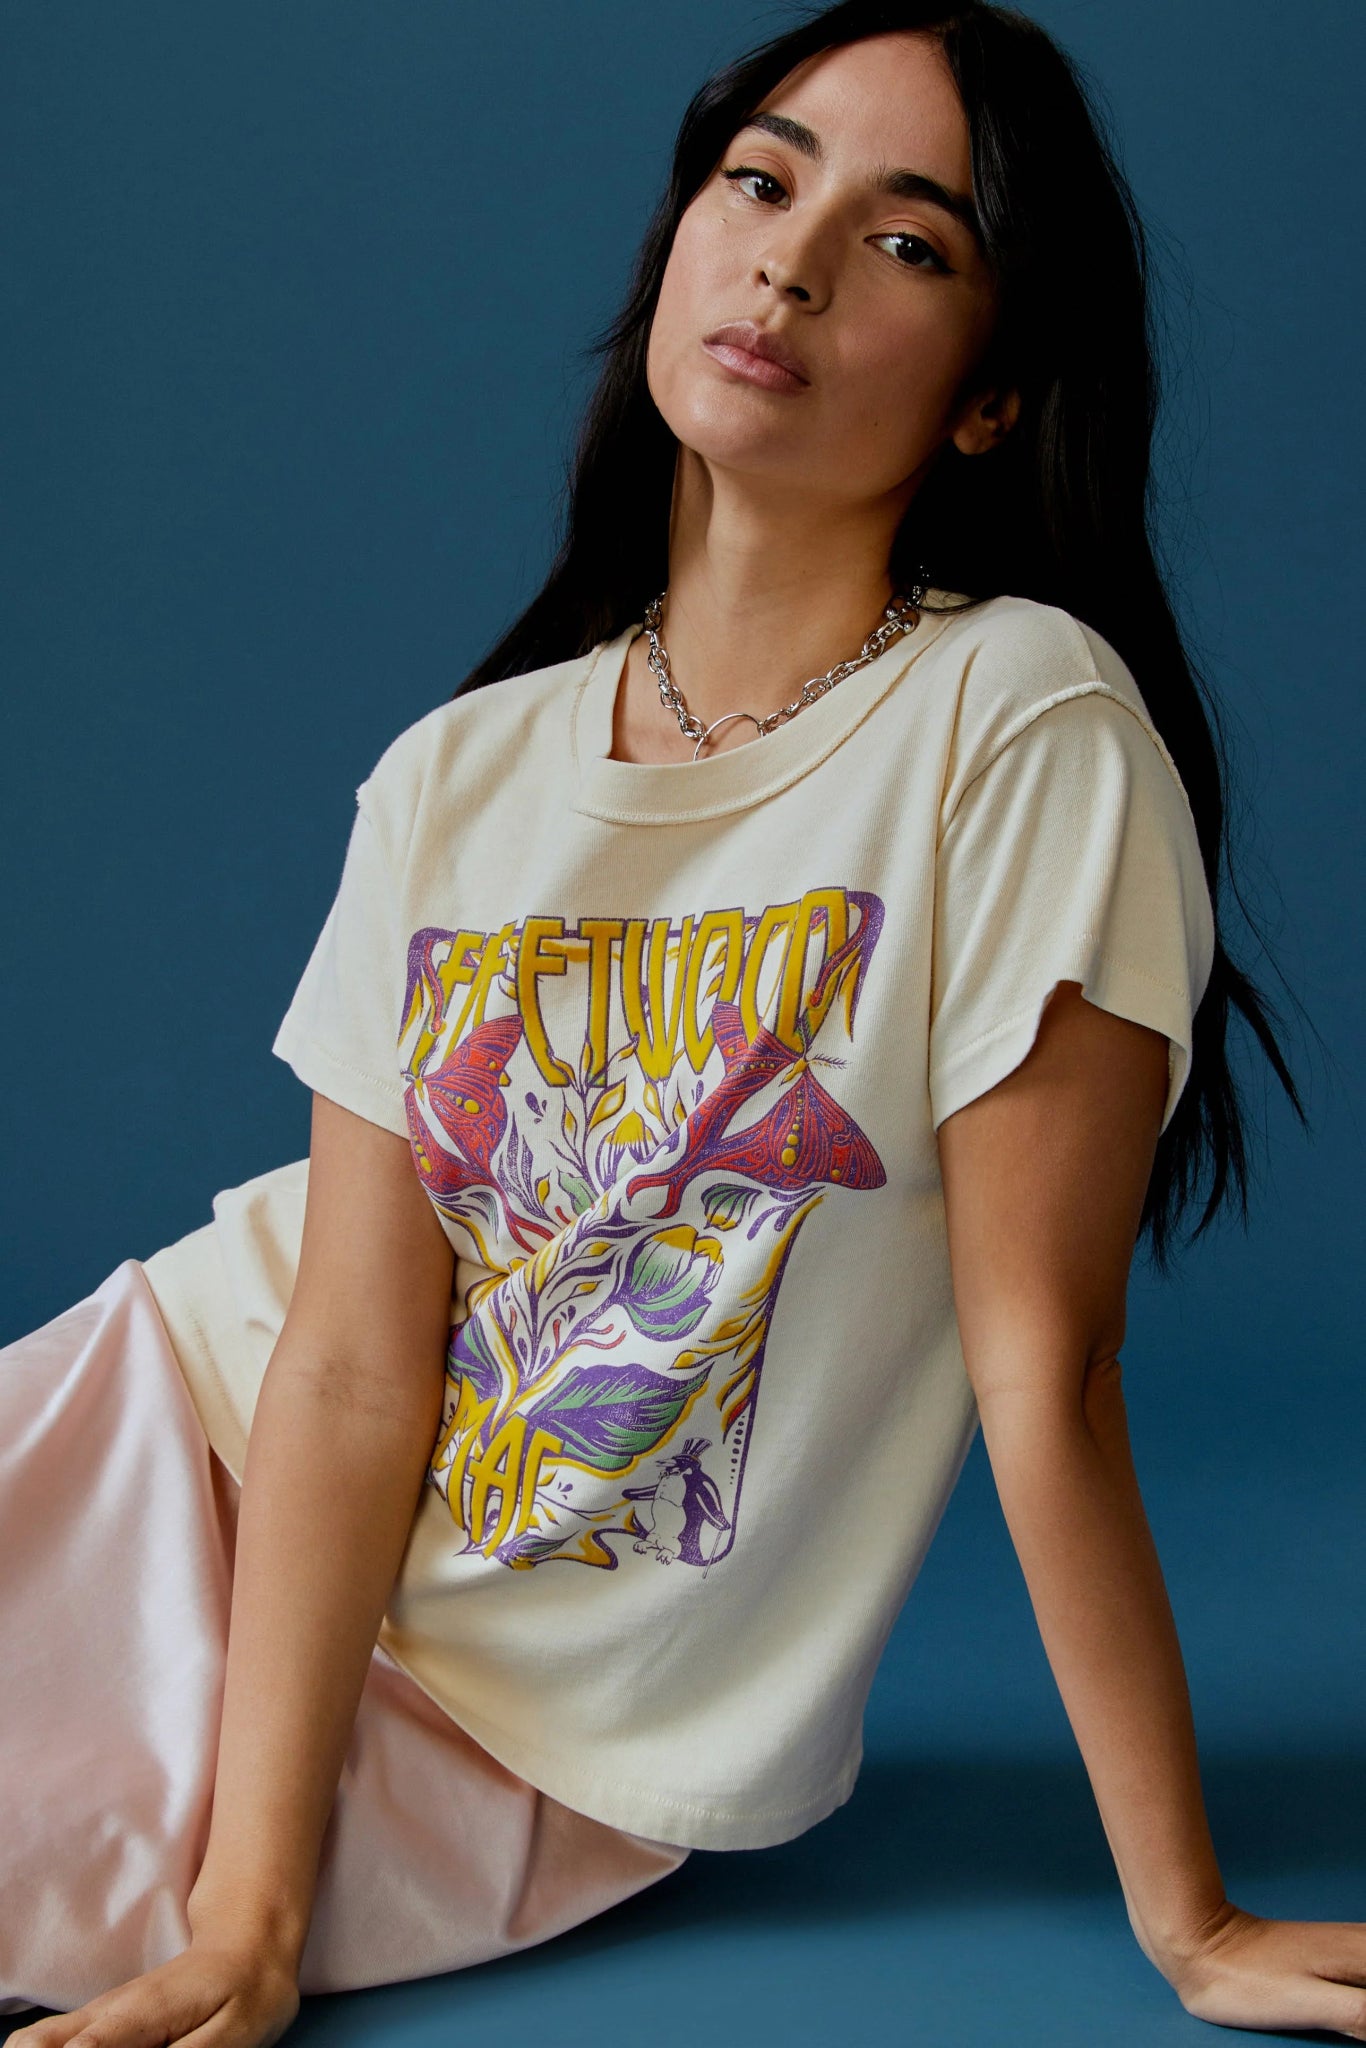 Daydreamer T-shirt | Fleetwood Mac | Butterflies | Girlfriend Tee - Women's Shirts & Tops - Blooming Daily